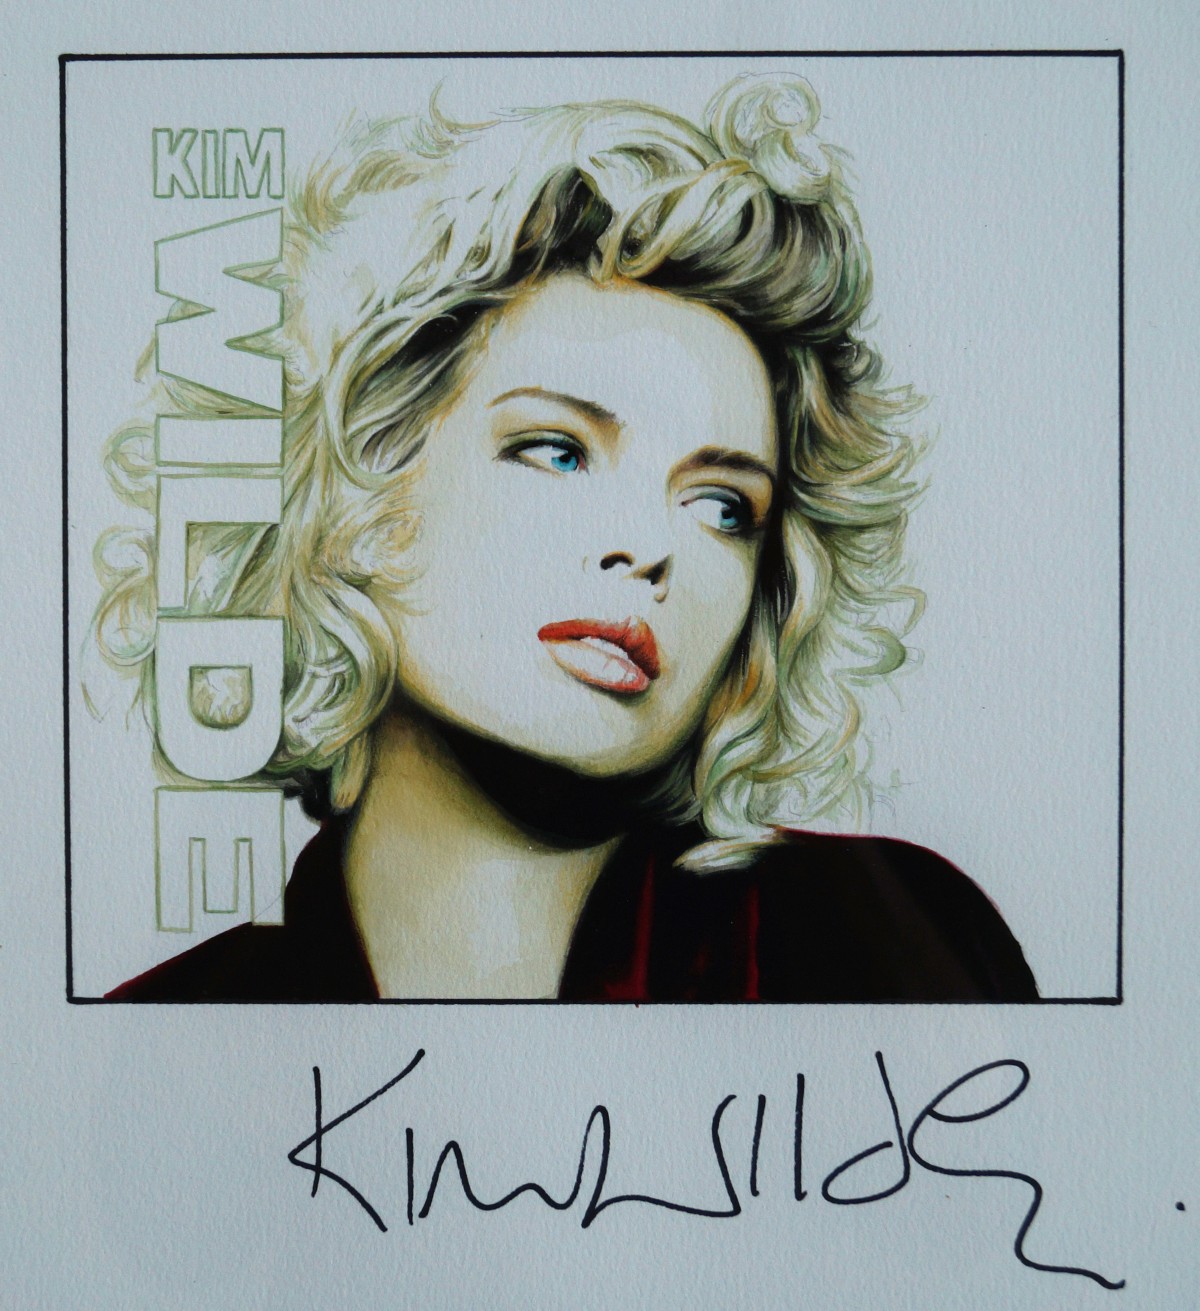 Kim Wilde signedportraits jole stamenkovic